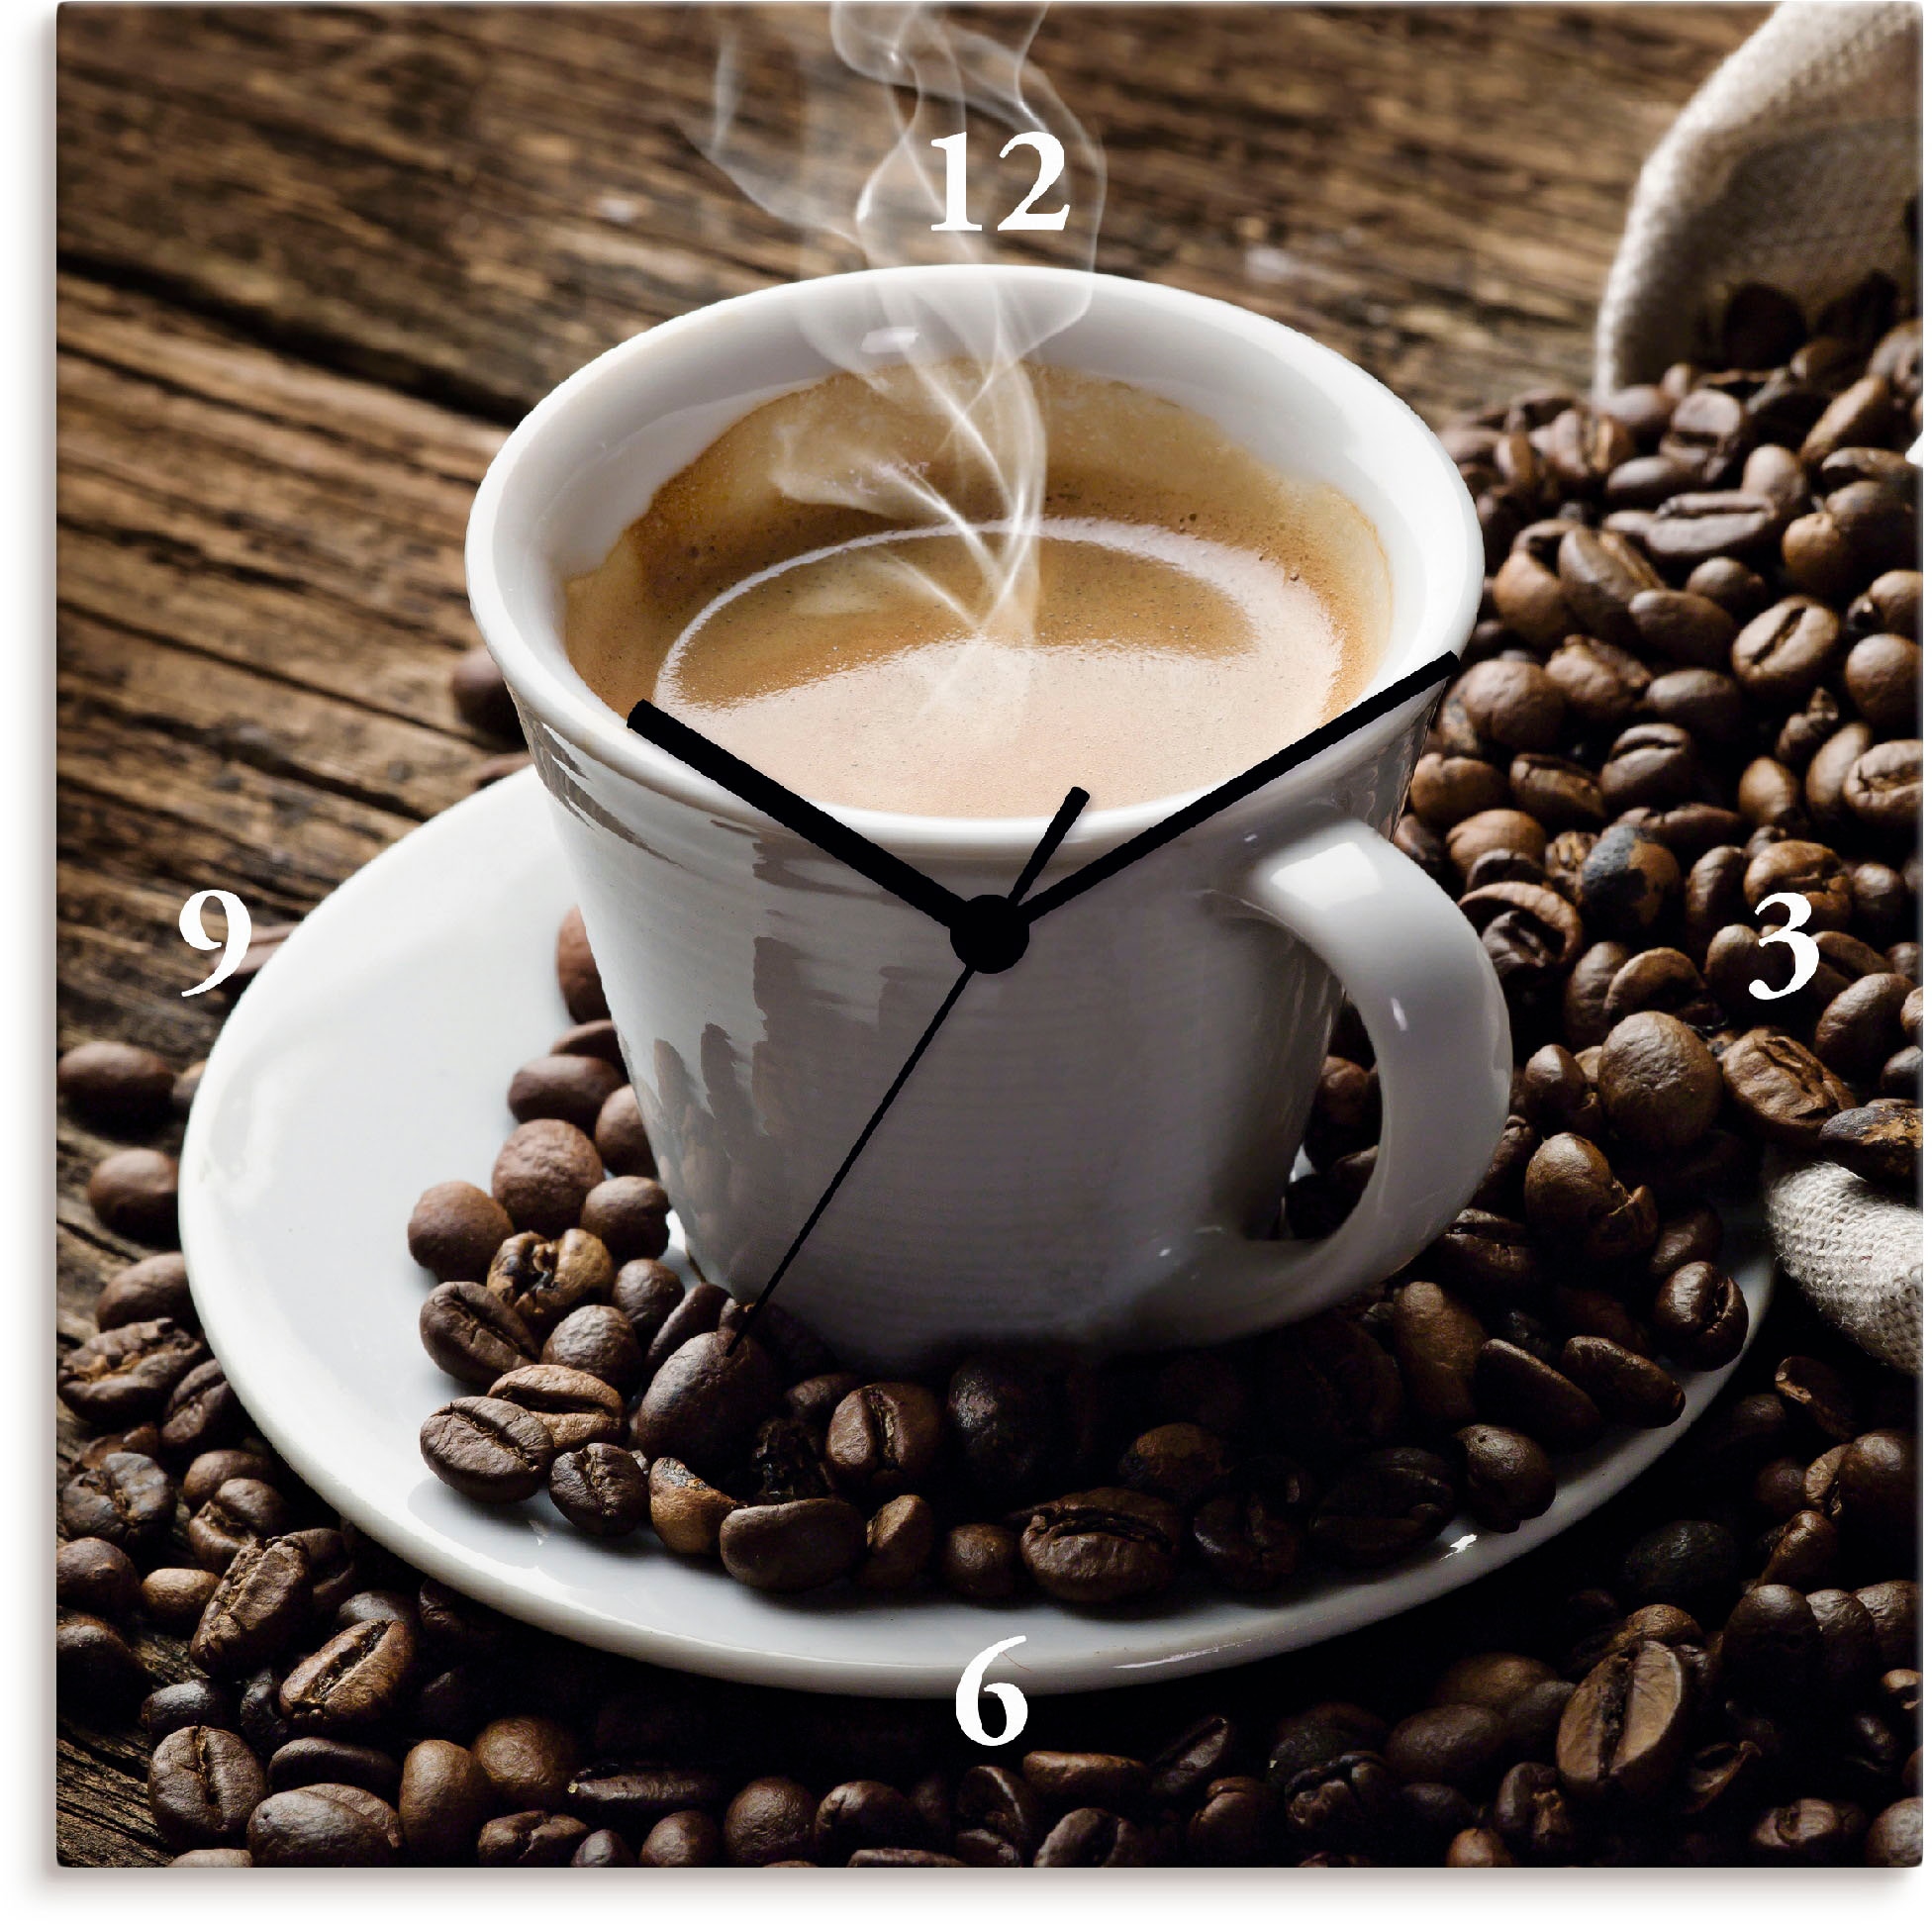 Wanduhr »Heißer Kaffee - dampfender Kaffee«, wahlweise mit Quarz- oder Funkuhrwerk,...